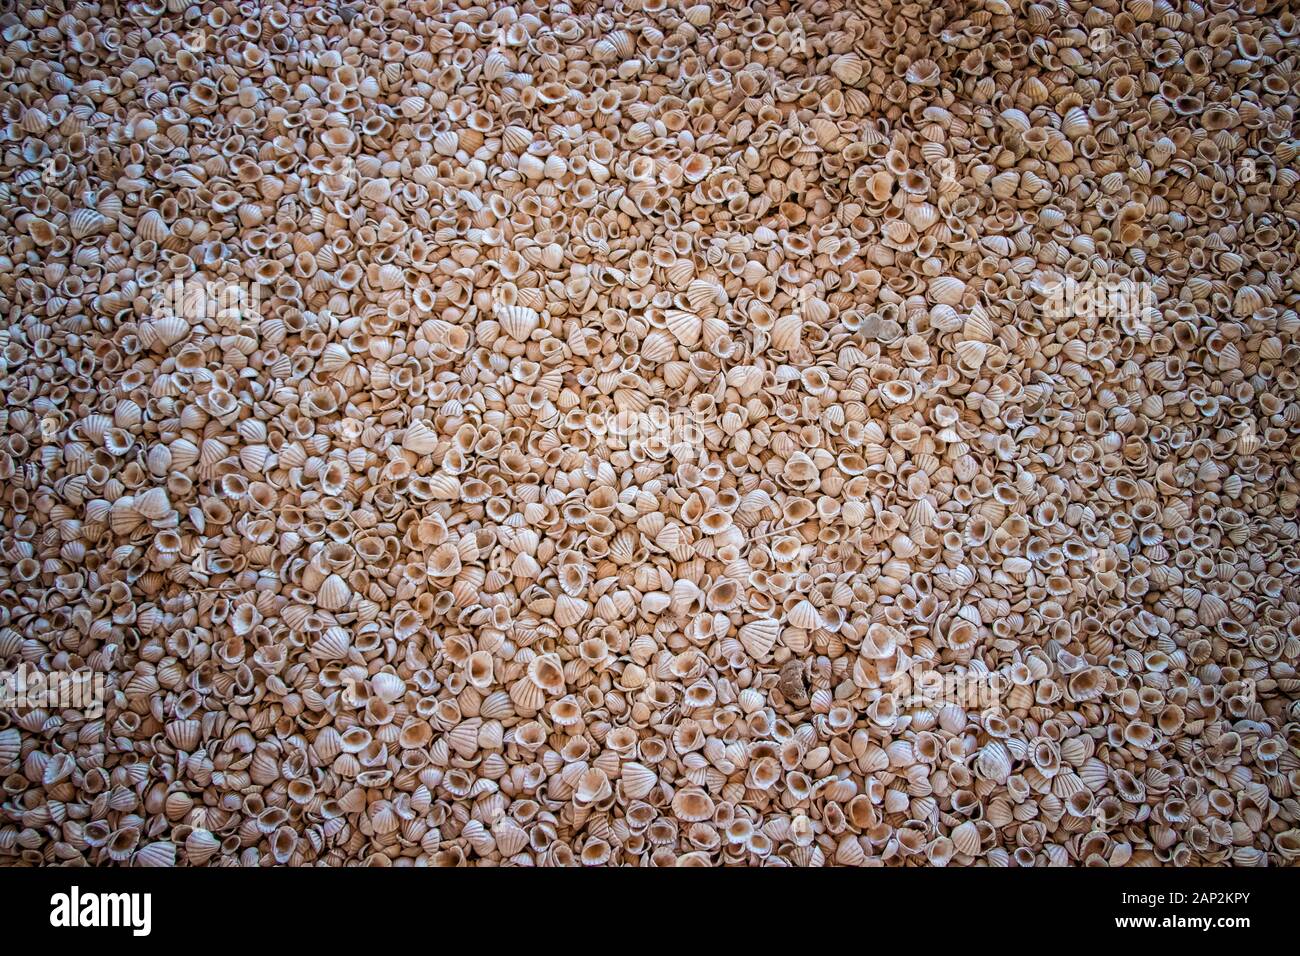 Muchos shells radican sobre todo el suelo. Se encuentra en una concha isla en Senegal, África. Es un contexto natural en un entorno natural. Foto de stock